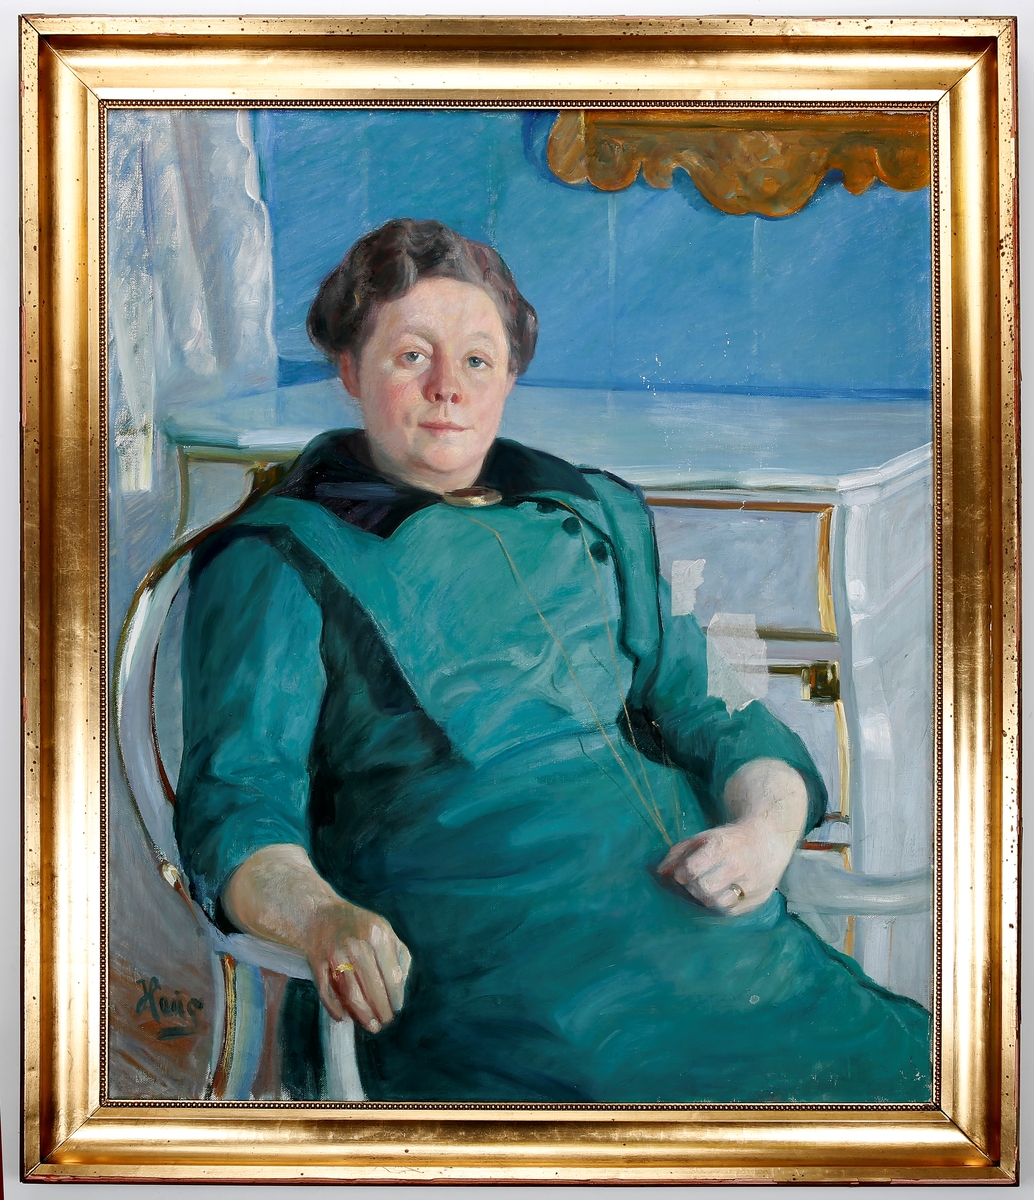 Portrett av Gyda Løken, sittende, kommode i bakgrunnen.